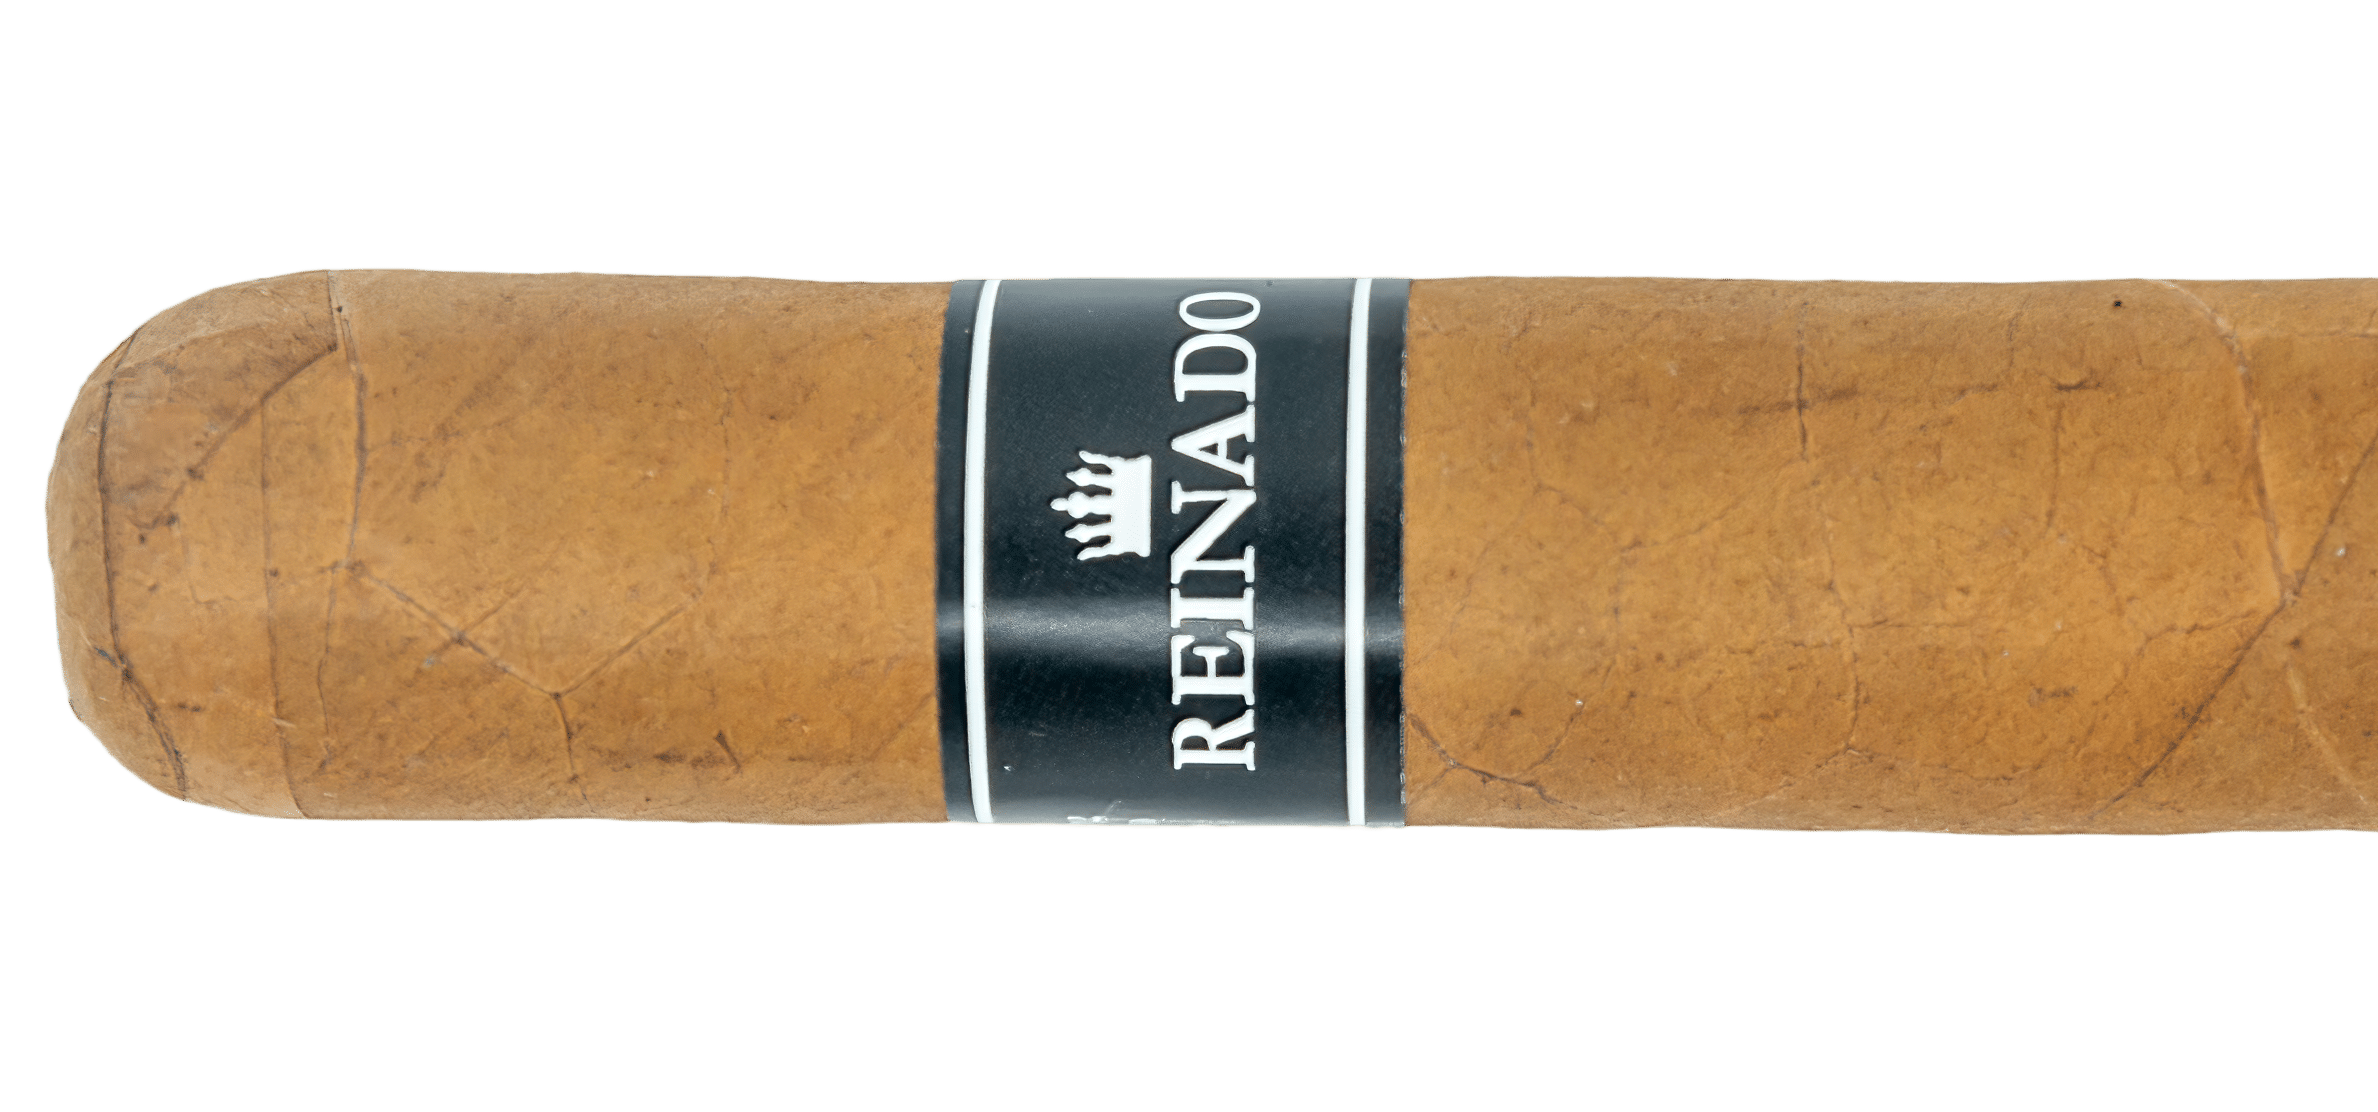 Reinado C29 - Blind Cigar Review